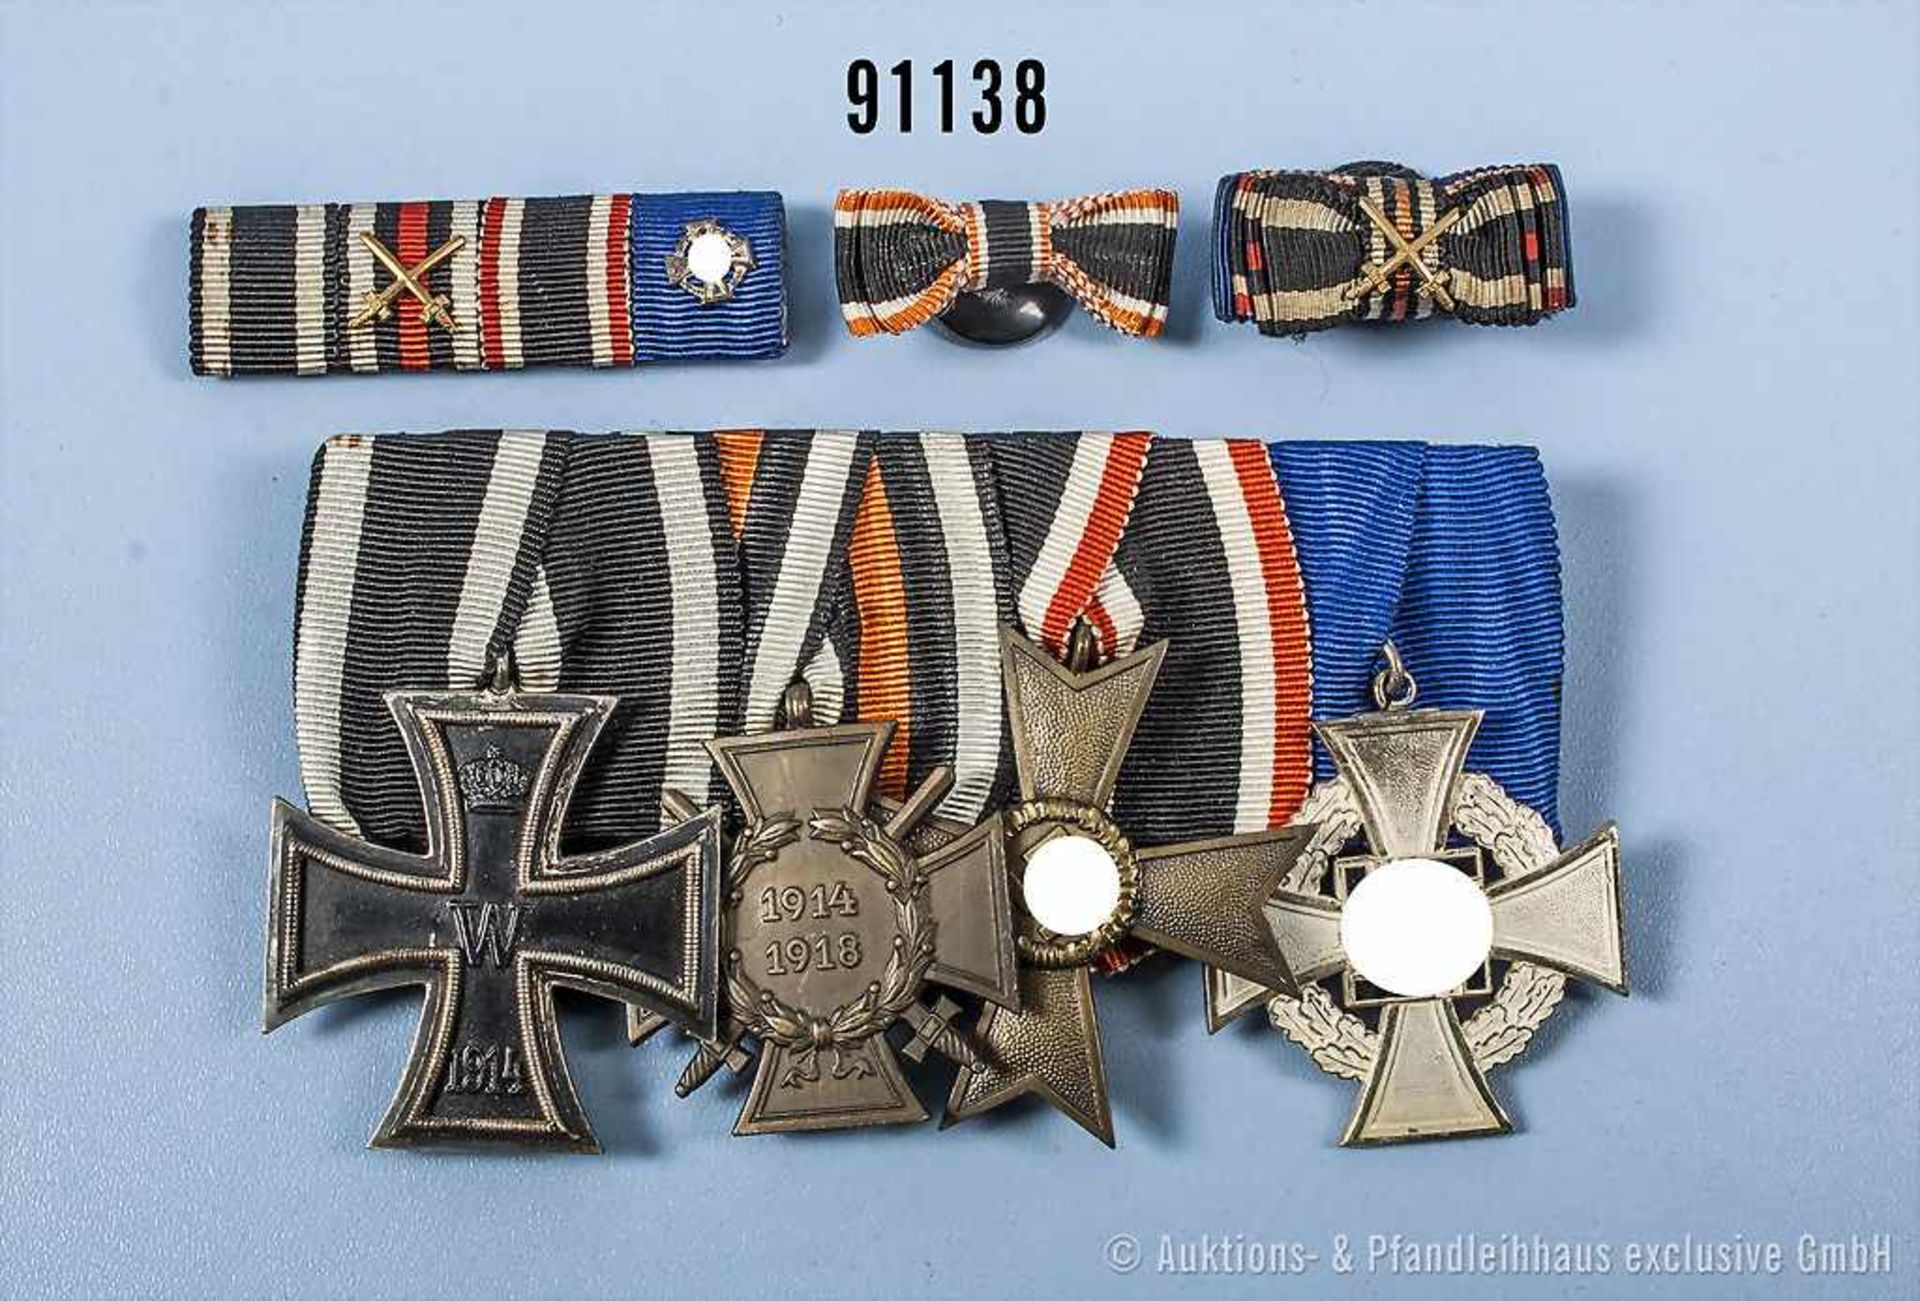 Konv. 4er Ordensspange, EK 2 1914, EKF, KVK 2. Klasse ohne Schwerter, Treuedienst-Ehrenzeichen für